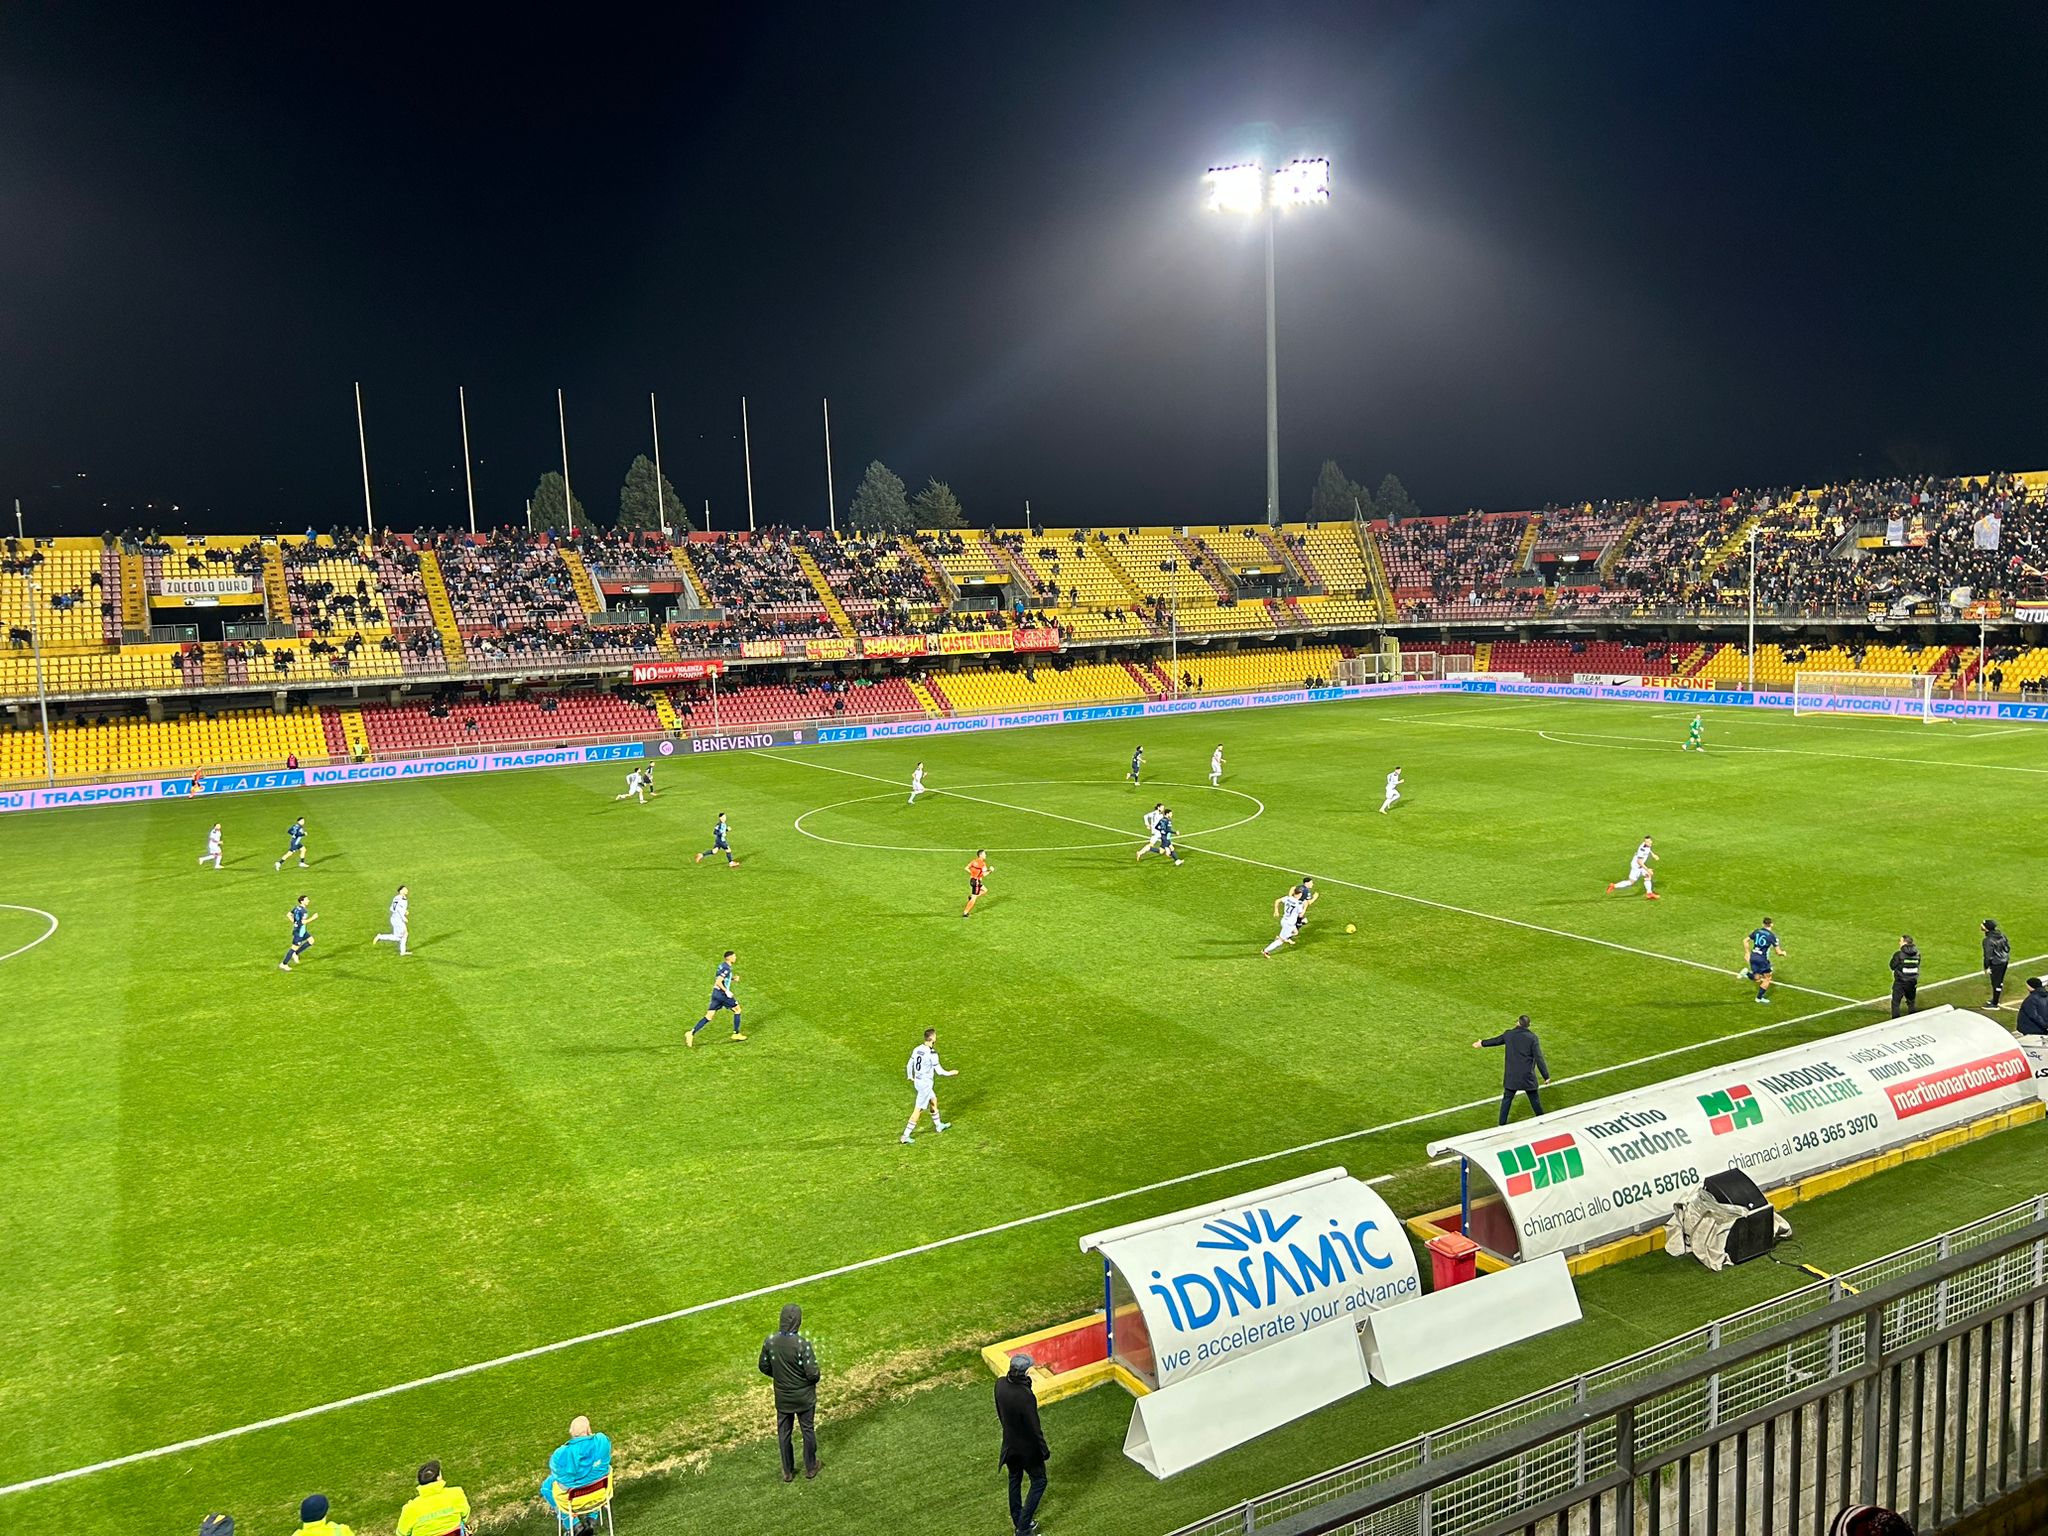 Benevento-Catania: 0-4. La foto dell’anno nero della Strega. Episodi arbitrali e due espulsioni, i giallorossi crollano